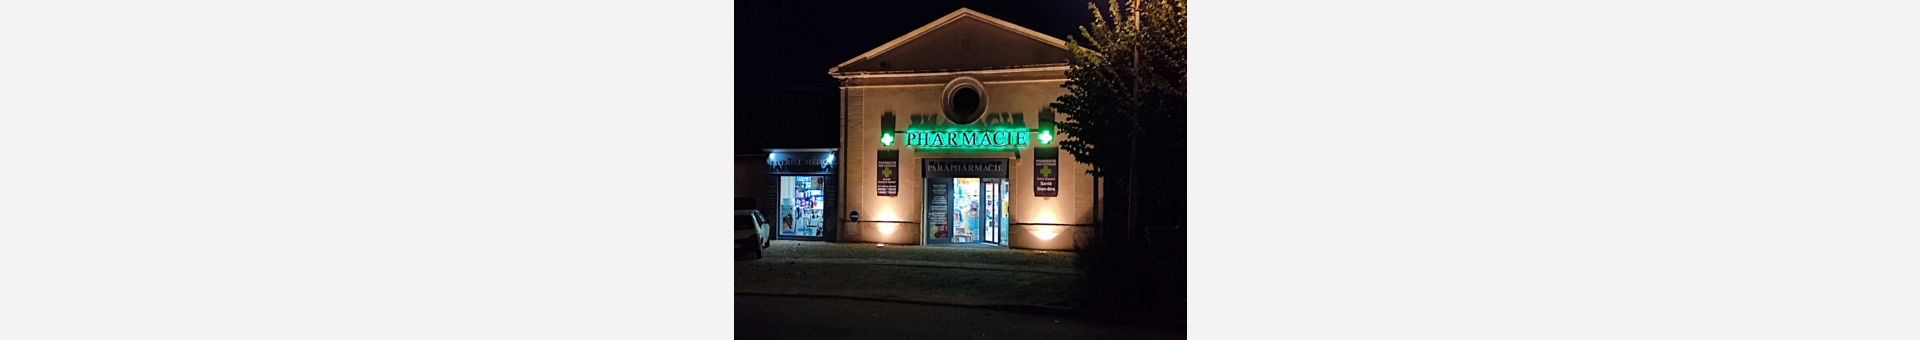 Pharmacie des Côteaux,Gensac